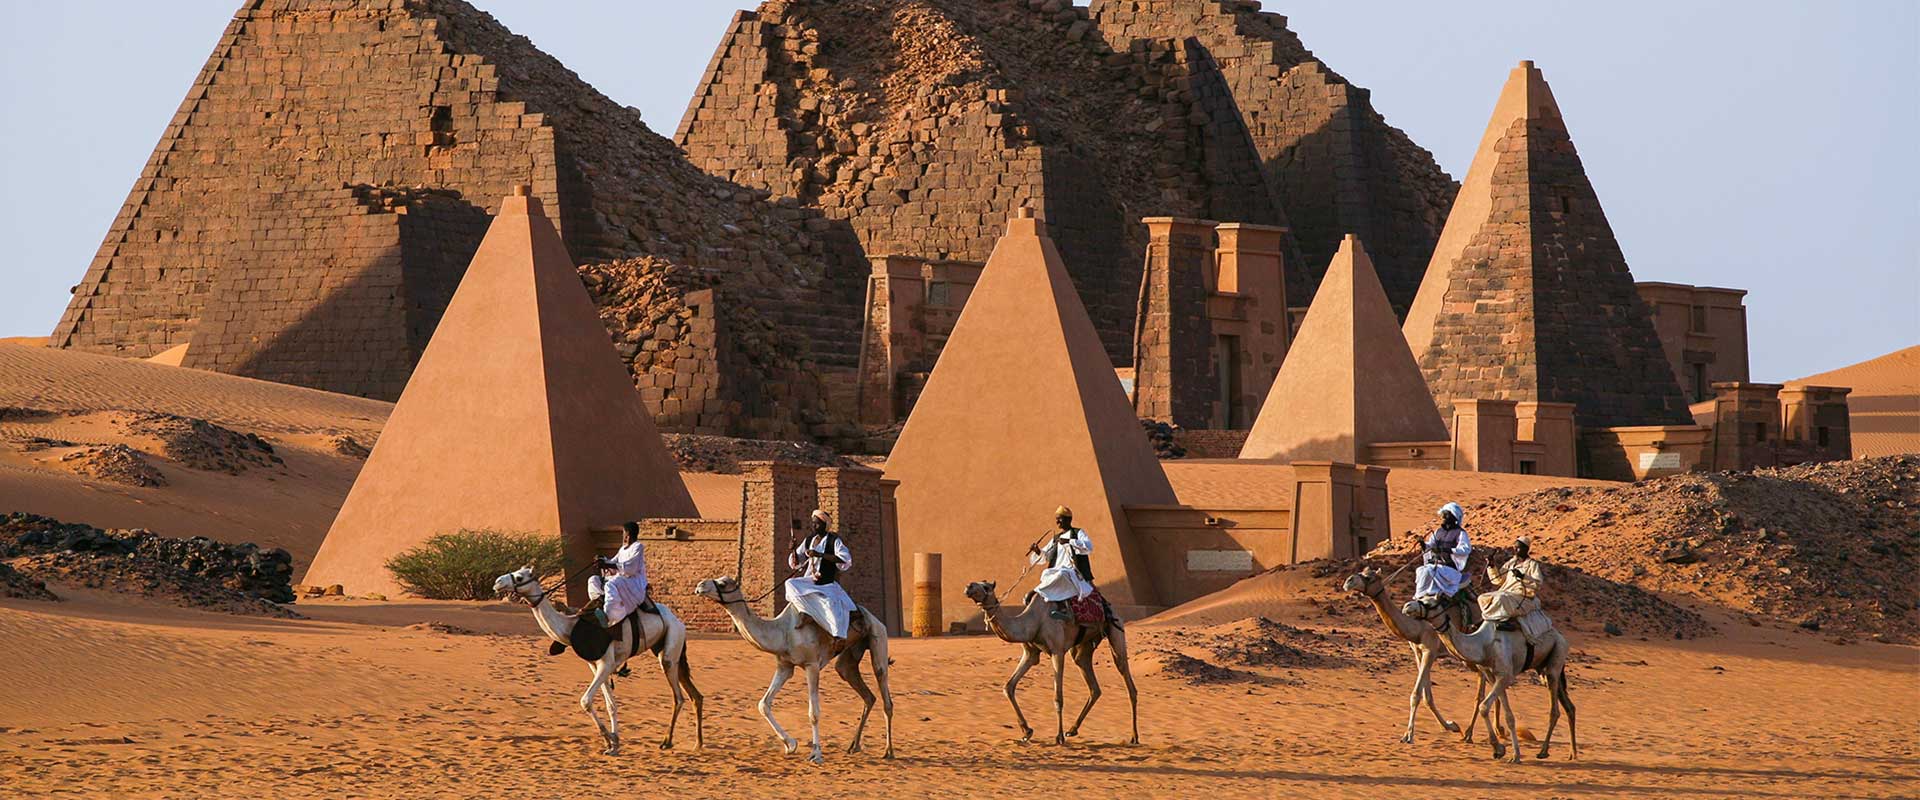 Sudán: las pirámides olvidadas